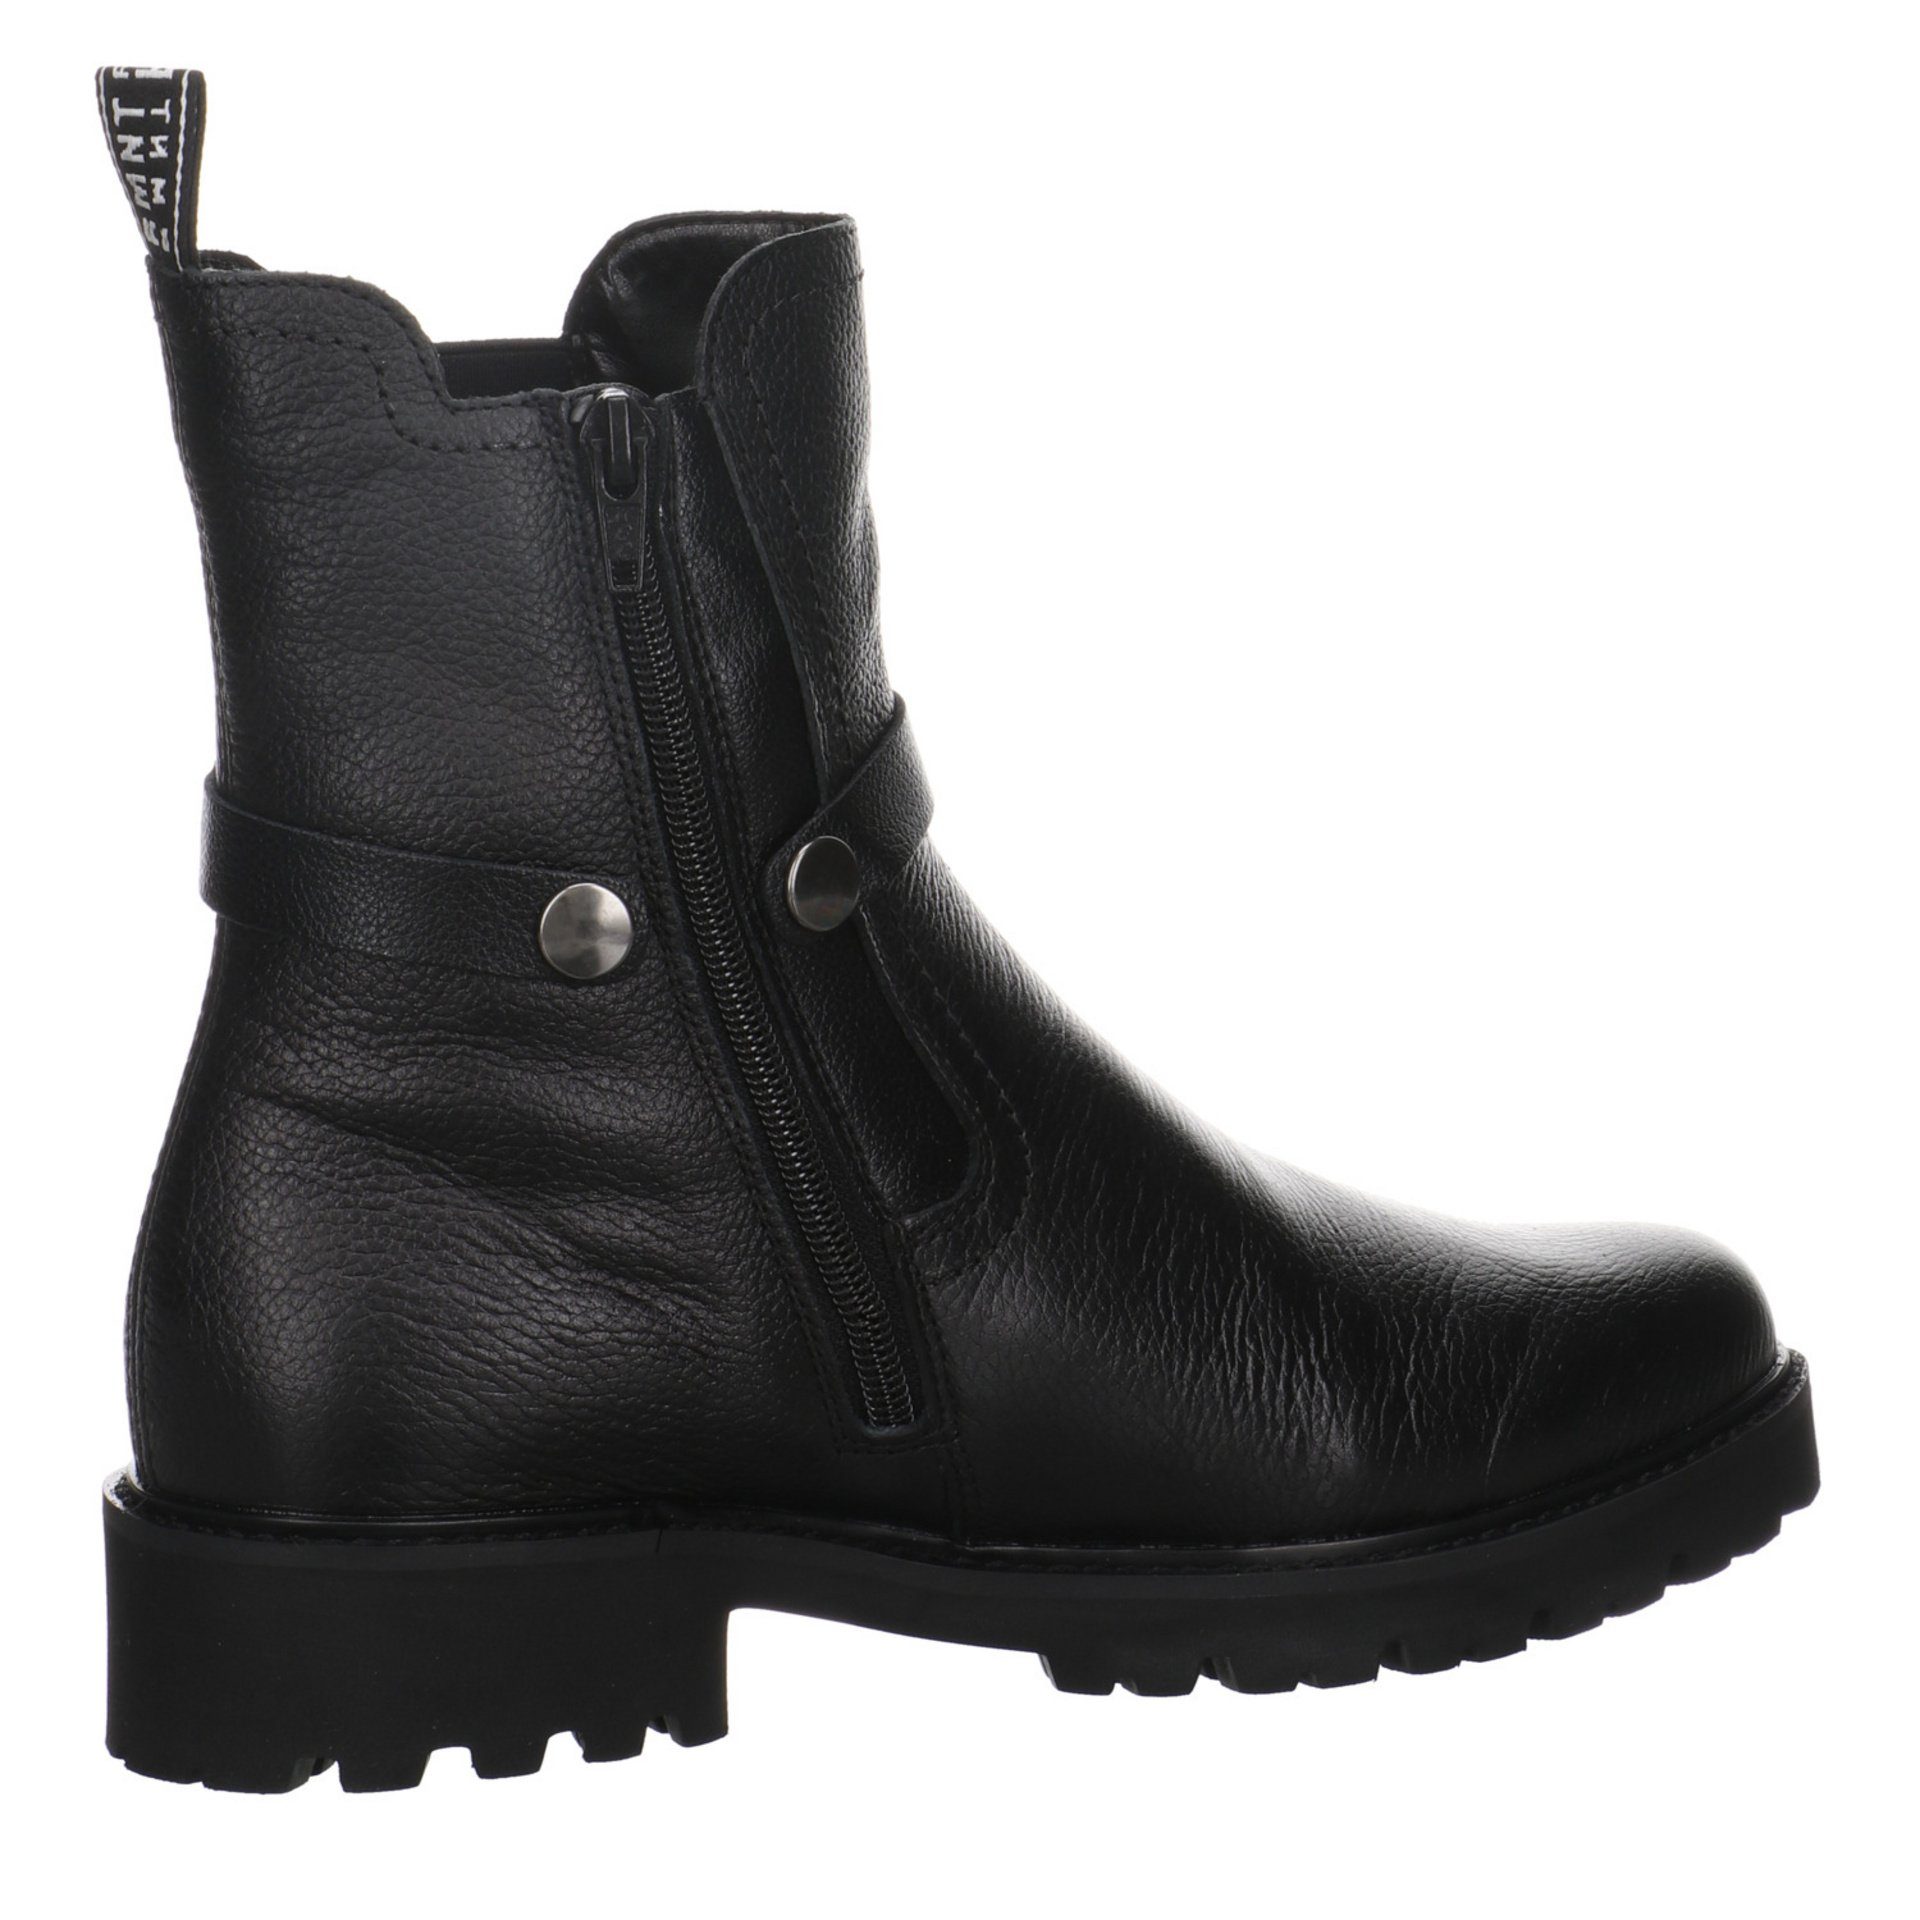 Freizeit Leder-/Textilkombination Boots Elegant Damen Stiefel Remonte Stiefel Schuhe